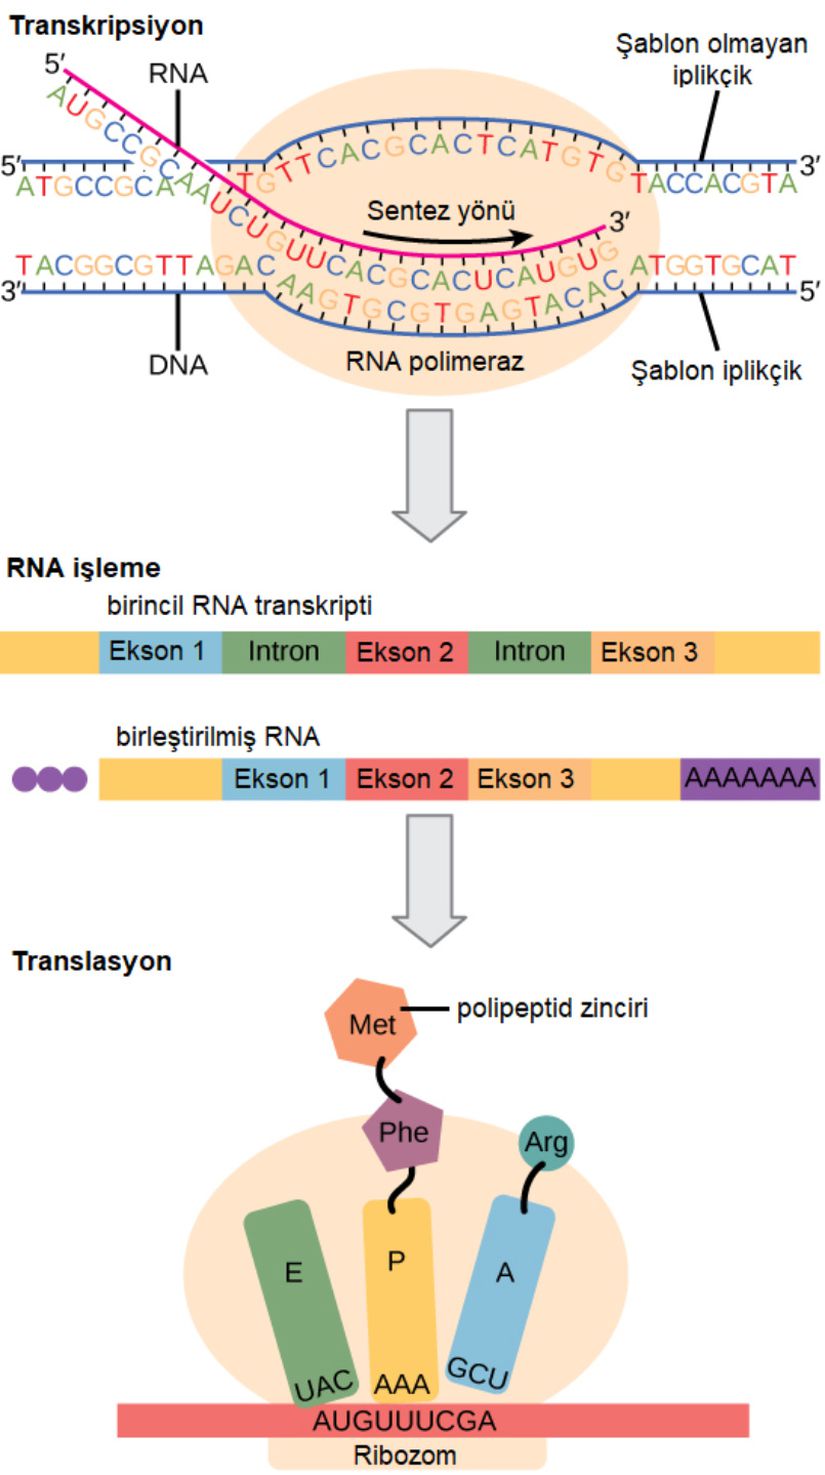 Ökaryotik gen ifadesinin düzenlenmesi, çekirdekte gerçekleşen transkripsiyon ve RNA işleme sırasında ve sitoplazmada gerçekleşen protein translasyonu sırasında gerçekleşebilir. Daha ileri düzenlemeler, proteinlerin post- translasyonel modifikasyonları yoluyla meydana gelebilir.